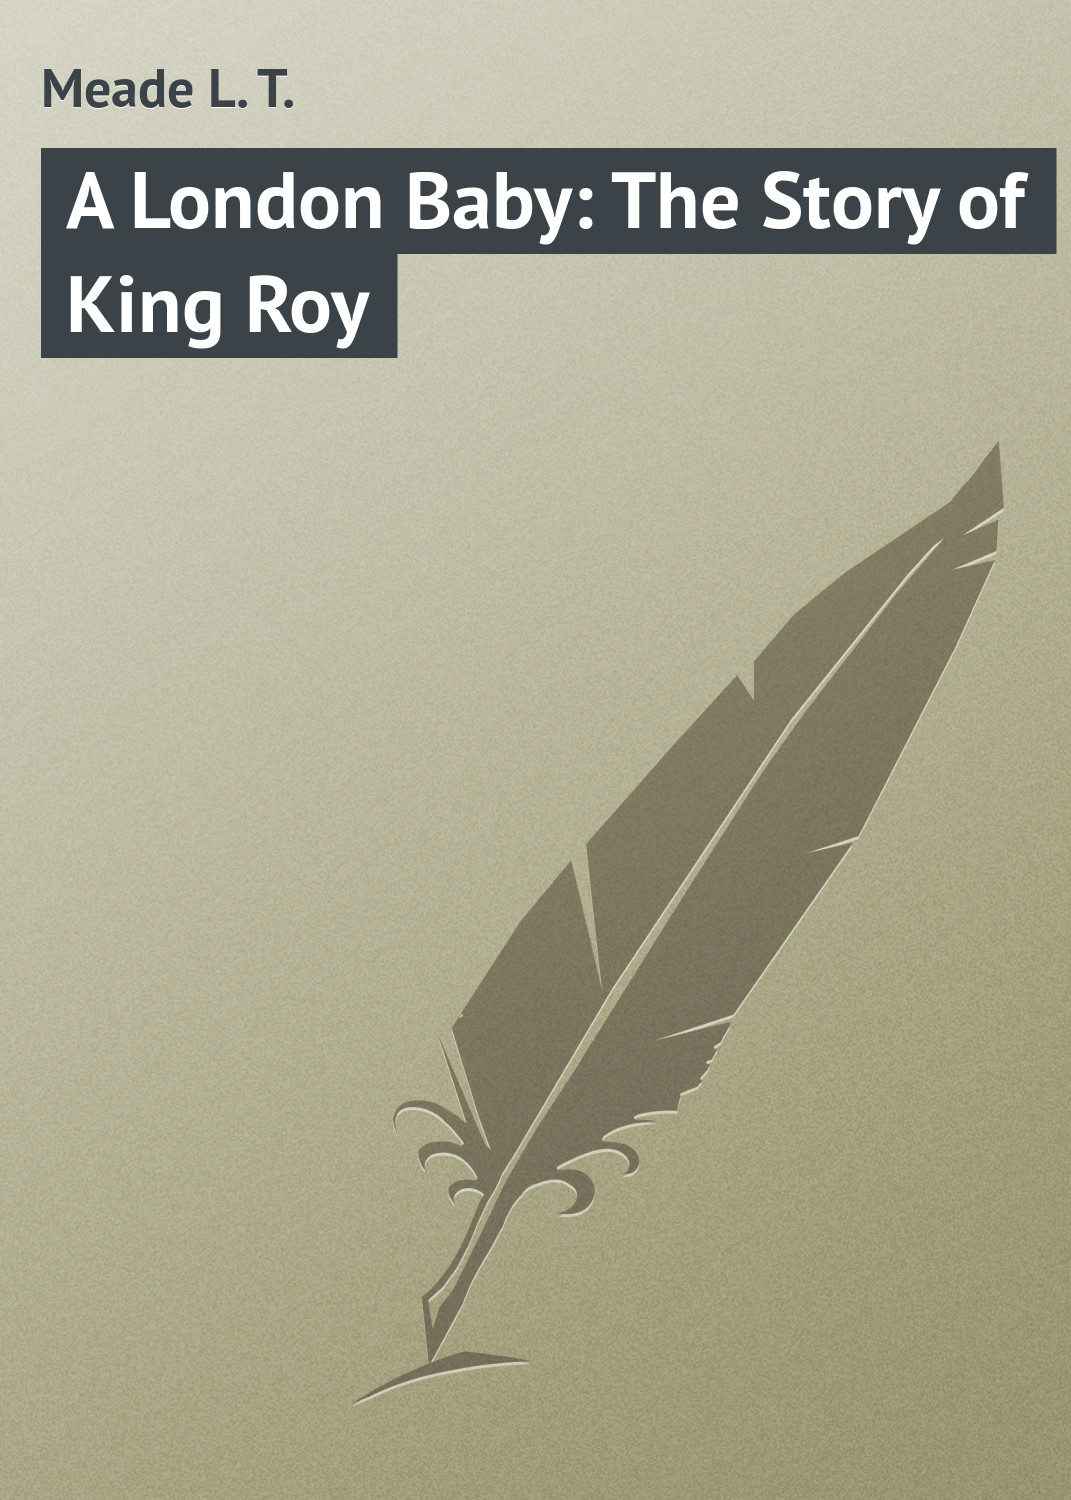 Книга A London Baby: The Story of King Roy из серии , созданная L. Meade, может относится к жанру Зарубежная классика, Зарубежные детские книги. Стоимость электронной книги A London Baby: The Story of King Roy с идентификатором 23147387 составляет 5.99 руб.